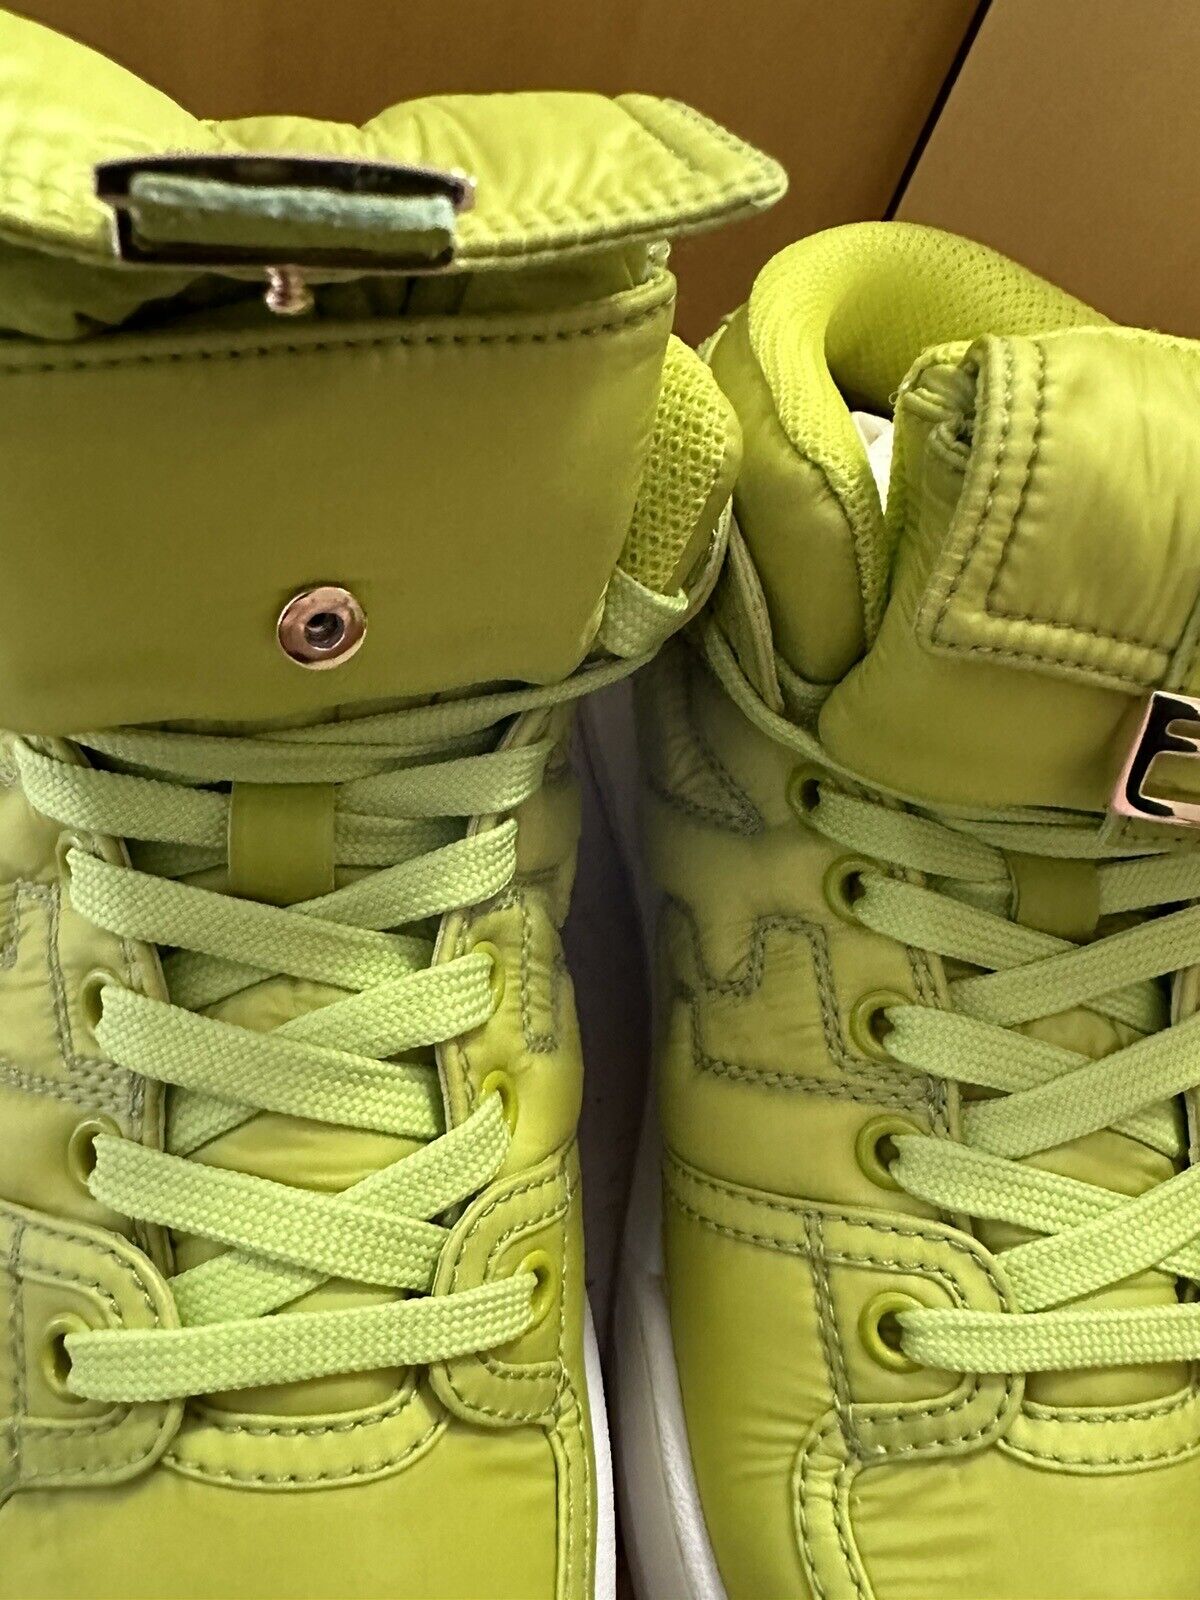 NIB $1150 Fendi Women’s Match High-top Sneakers Green 8 US/38 Eu